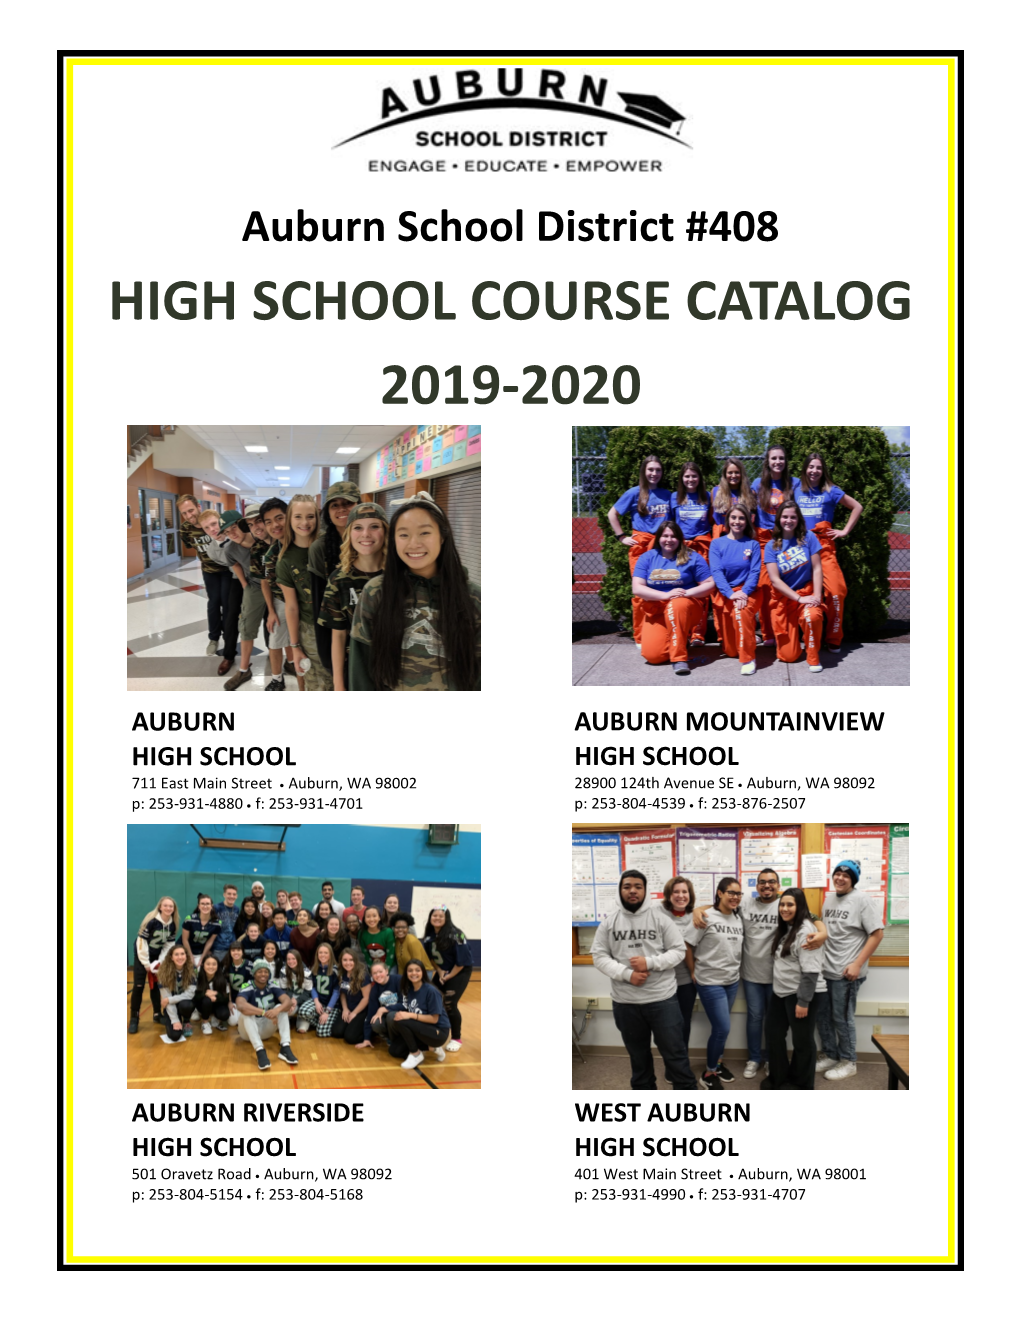 High School Course Catalog 2019-2020